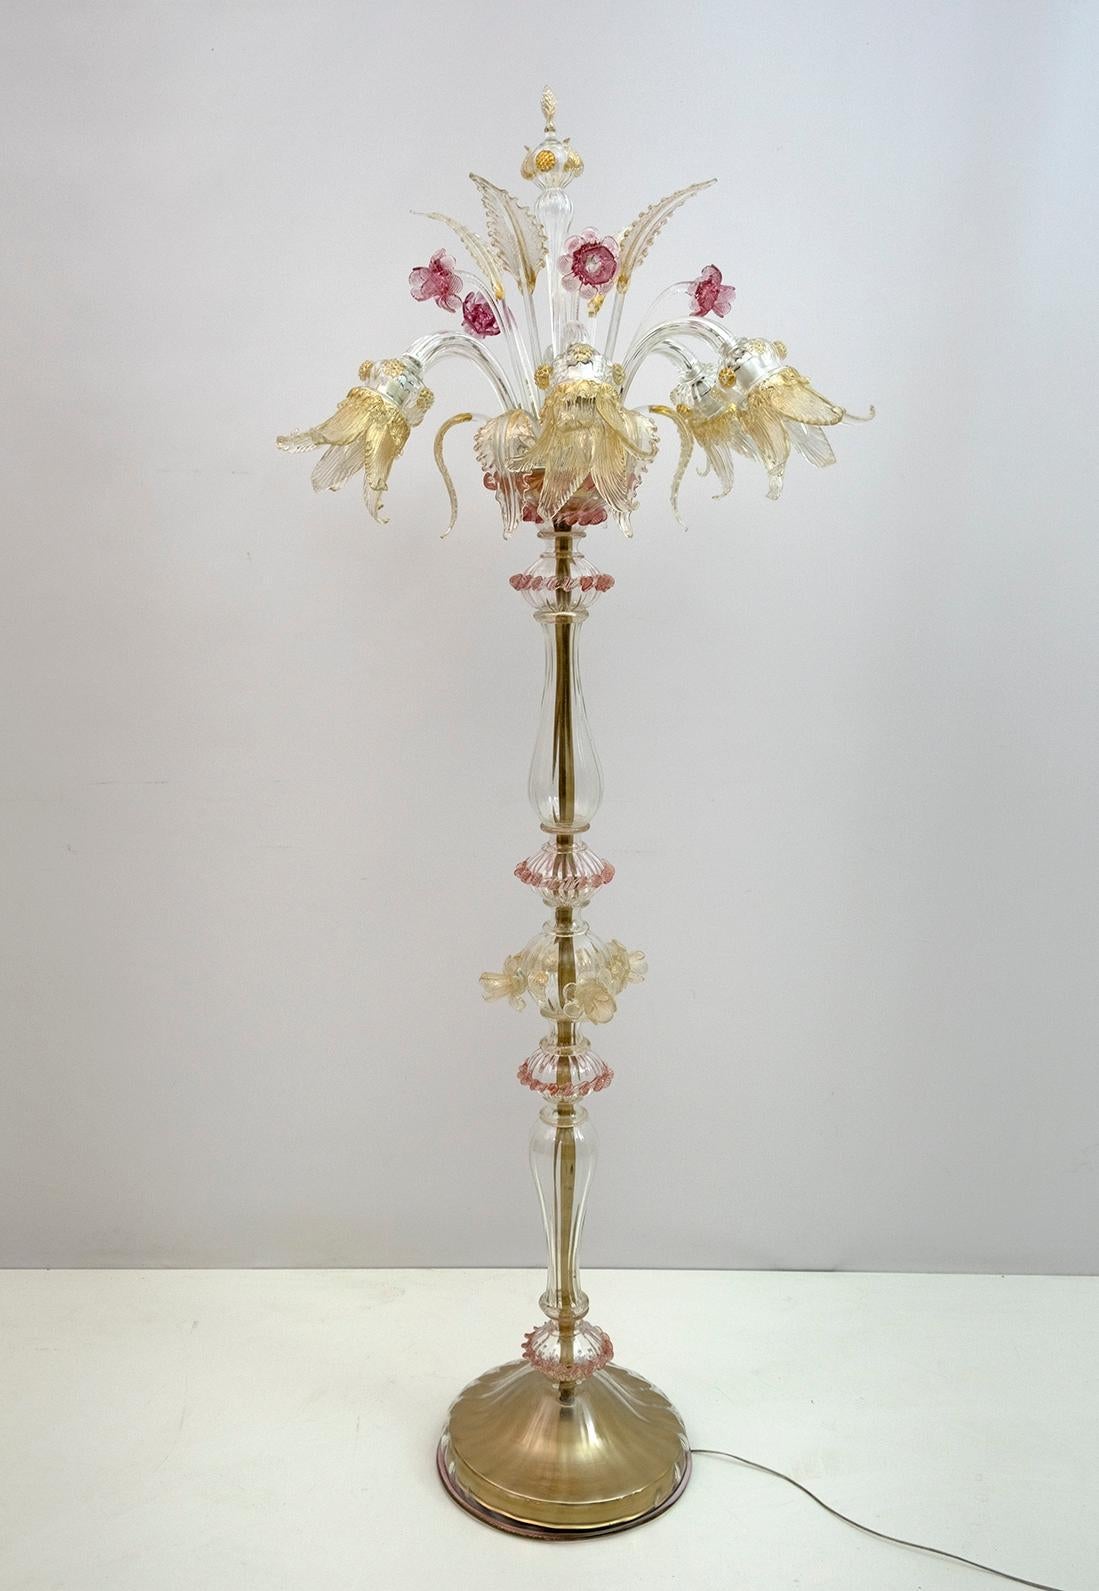 Eine elegante sechsflammige Stehleuchte aus Muranoglas mit transparenten Farben und raffinierten Oberflächen in Rosa und Elfenbein. Mit einer zentrierten bauchigen Säule, die Zweige und Blumen ausstrahlt und die Blätter aus Muranoglas fein